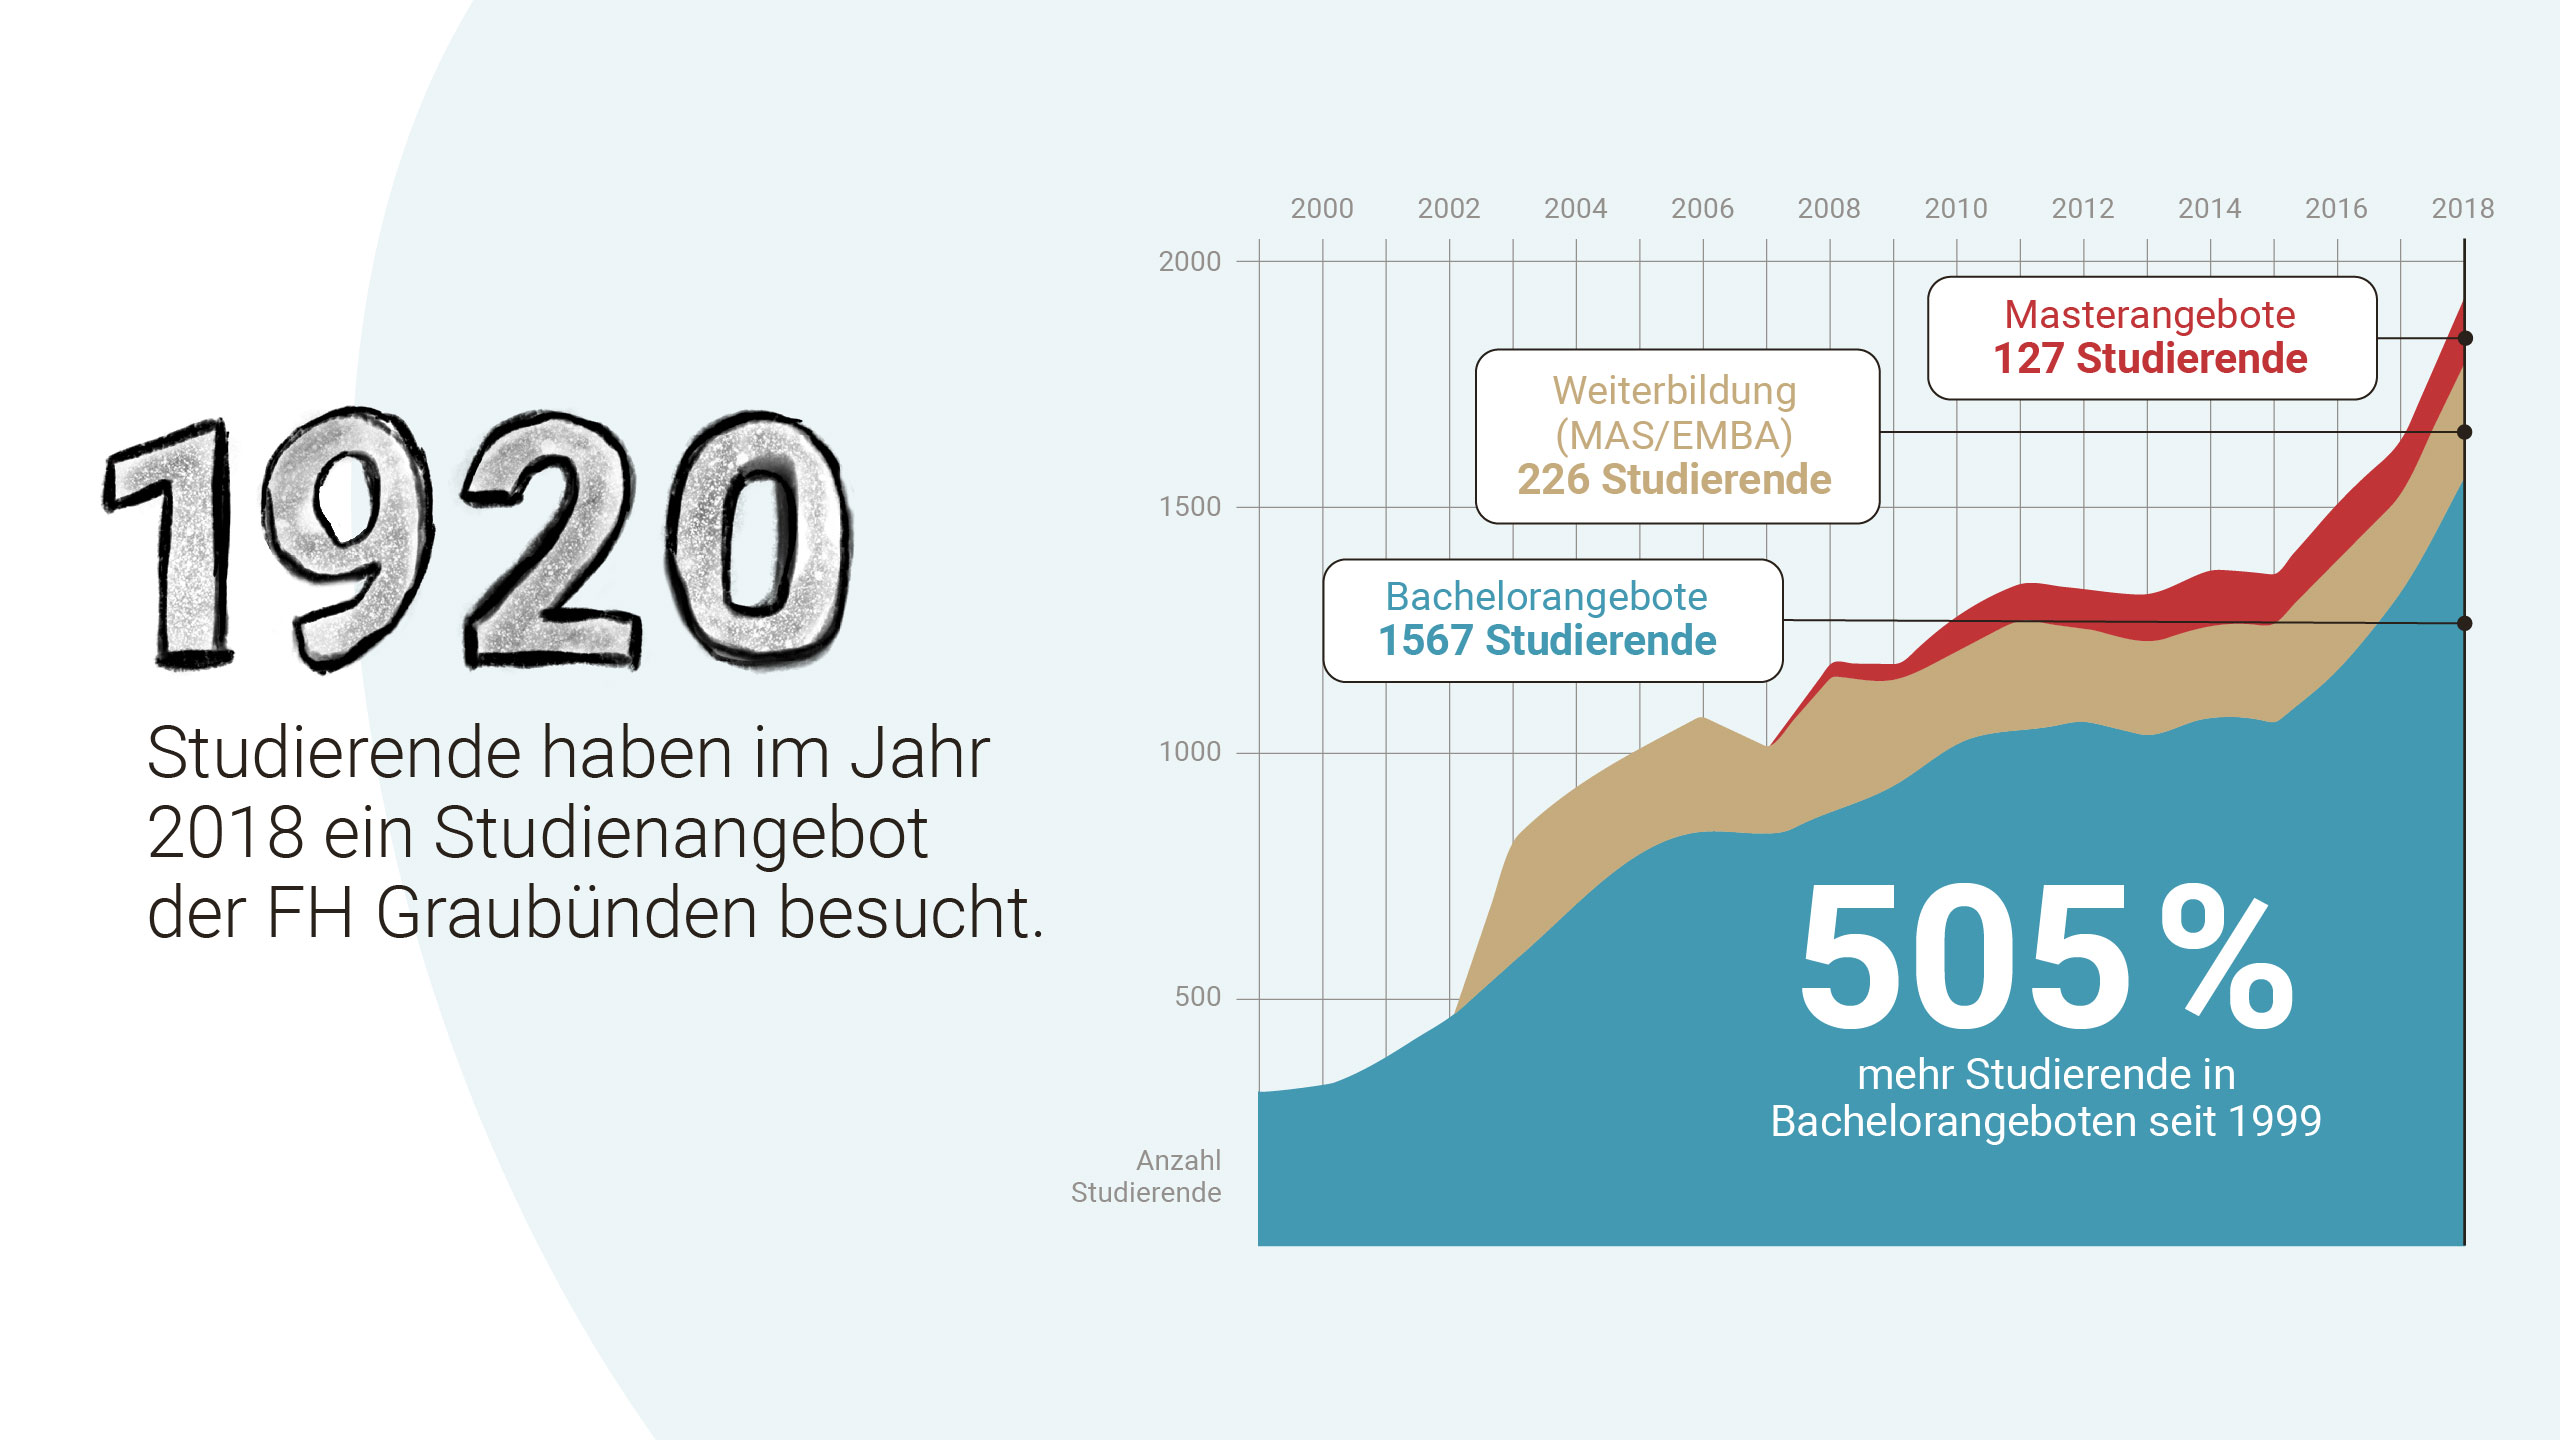 1920 Studierende an der FH Graubünden. Dies entspricht in den Bachelorangeboten einem Zuwachs um 505% seit dem Jahr 1996.